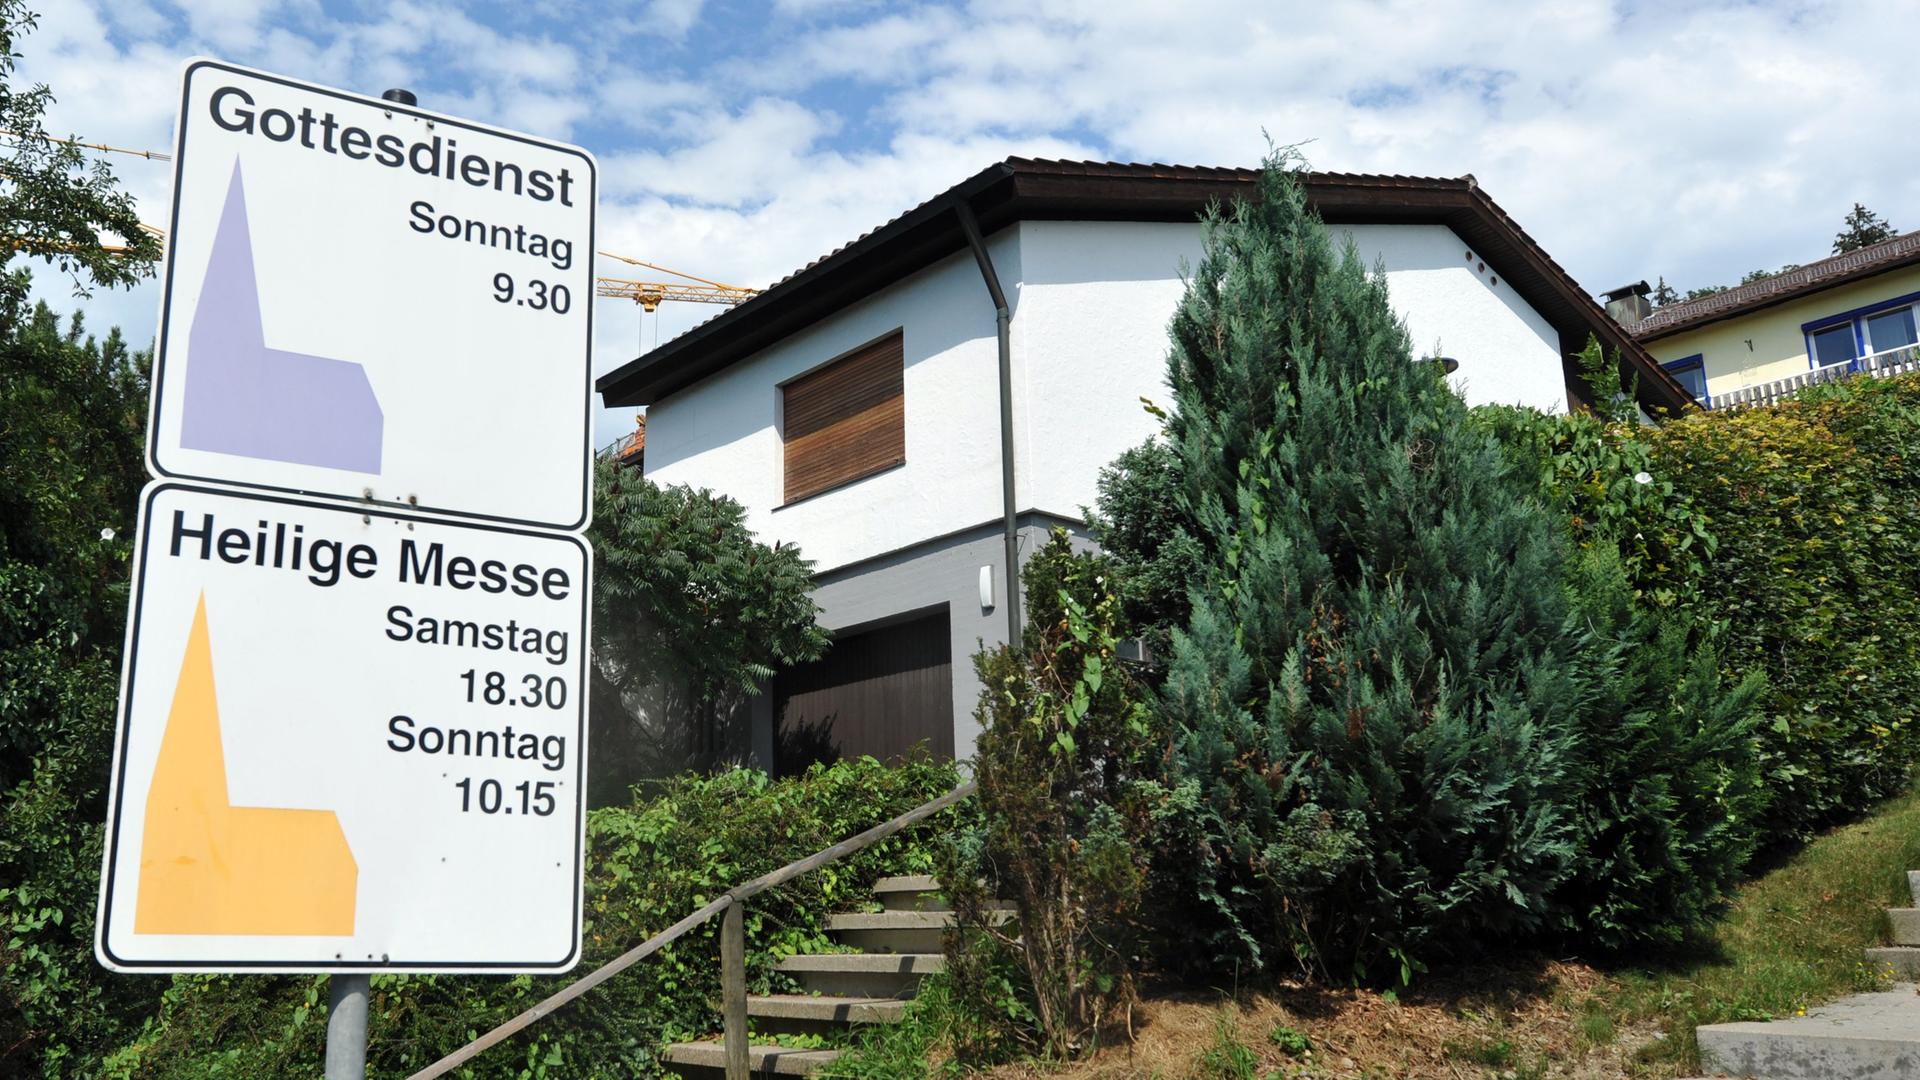 An einem Haus in Leutkirch (Kreis Ravensburg) sind die Rollläden heruntergelassen. Vor dem Haus zwei Schilder mit Hinweise auf den Gottesdienst und die Heilige Messe